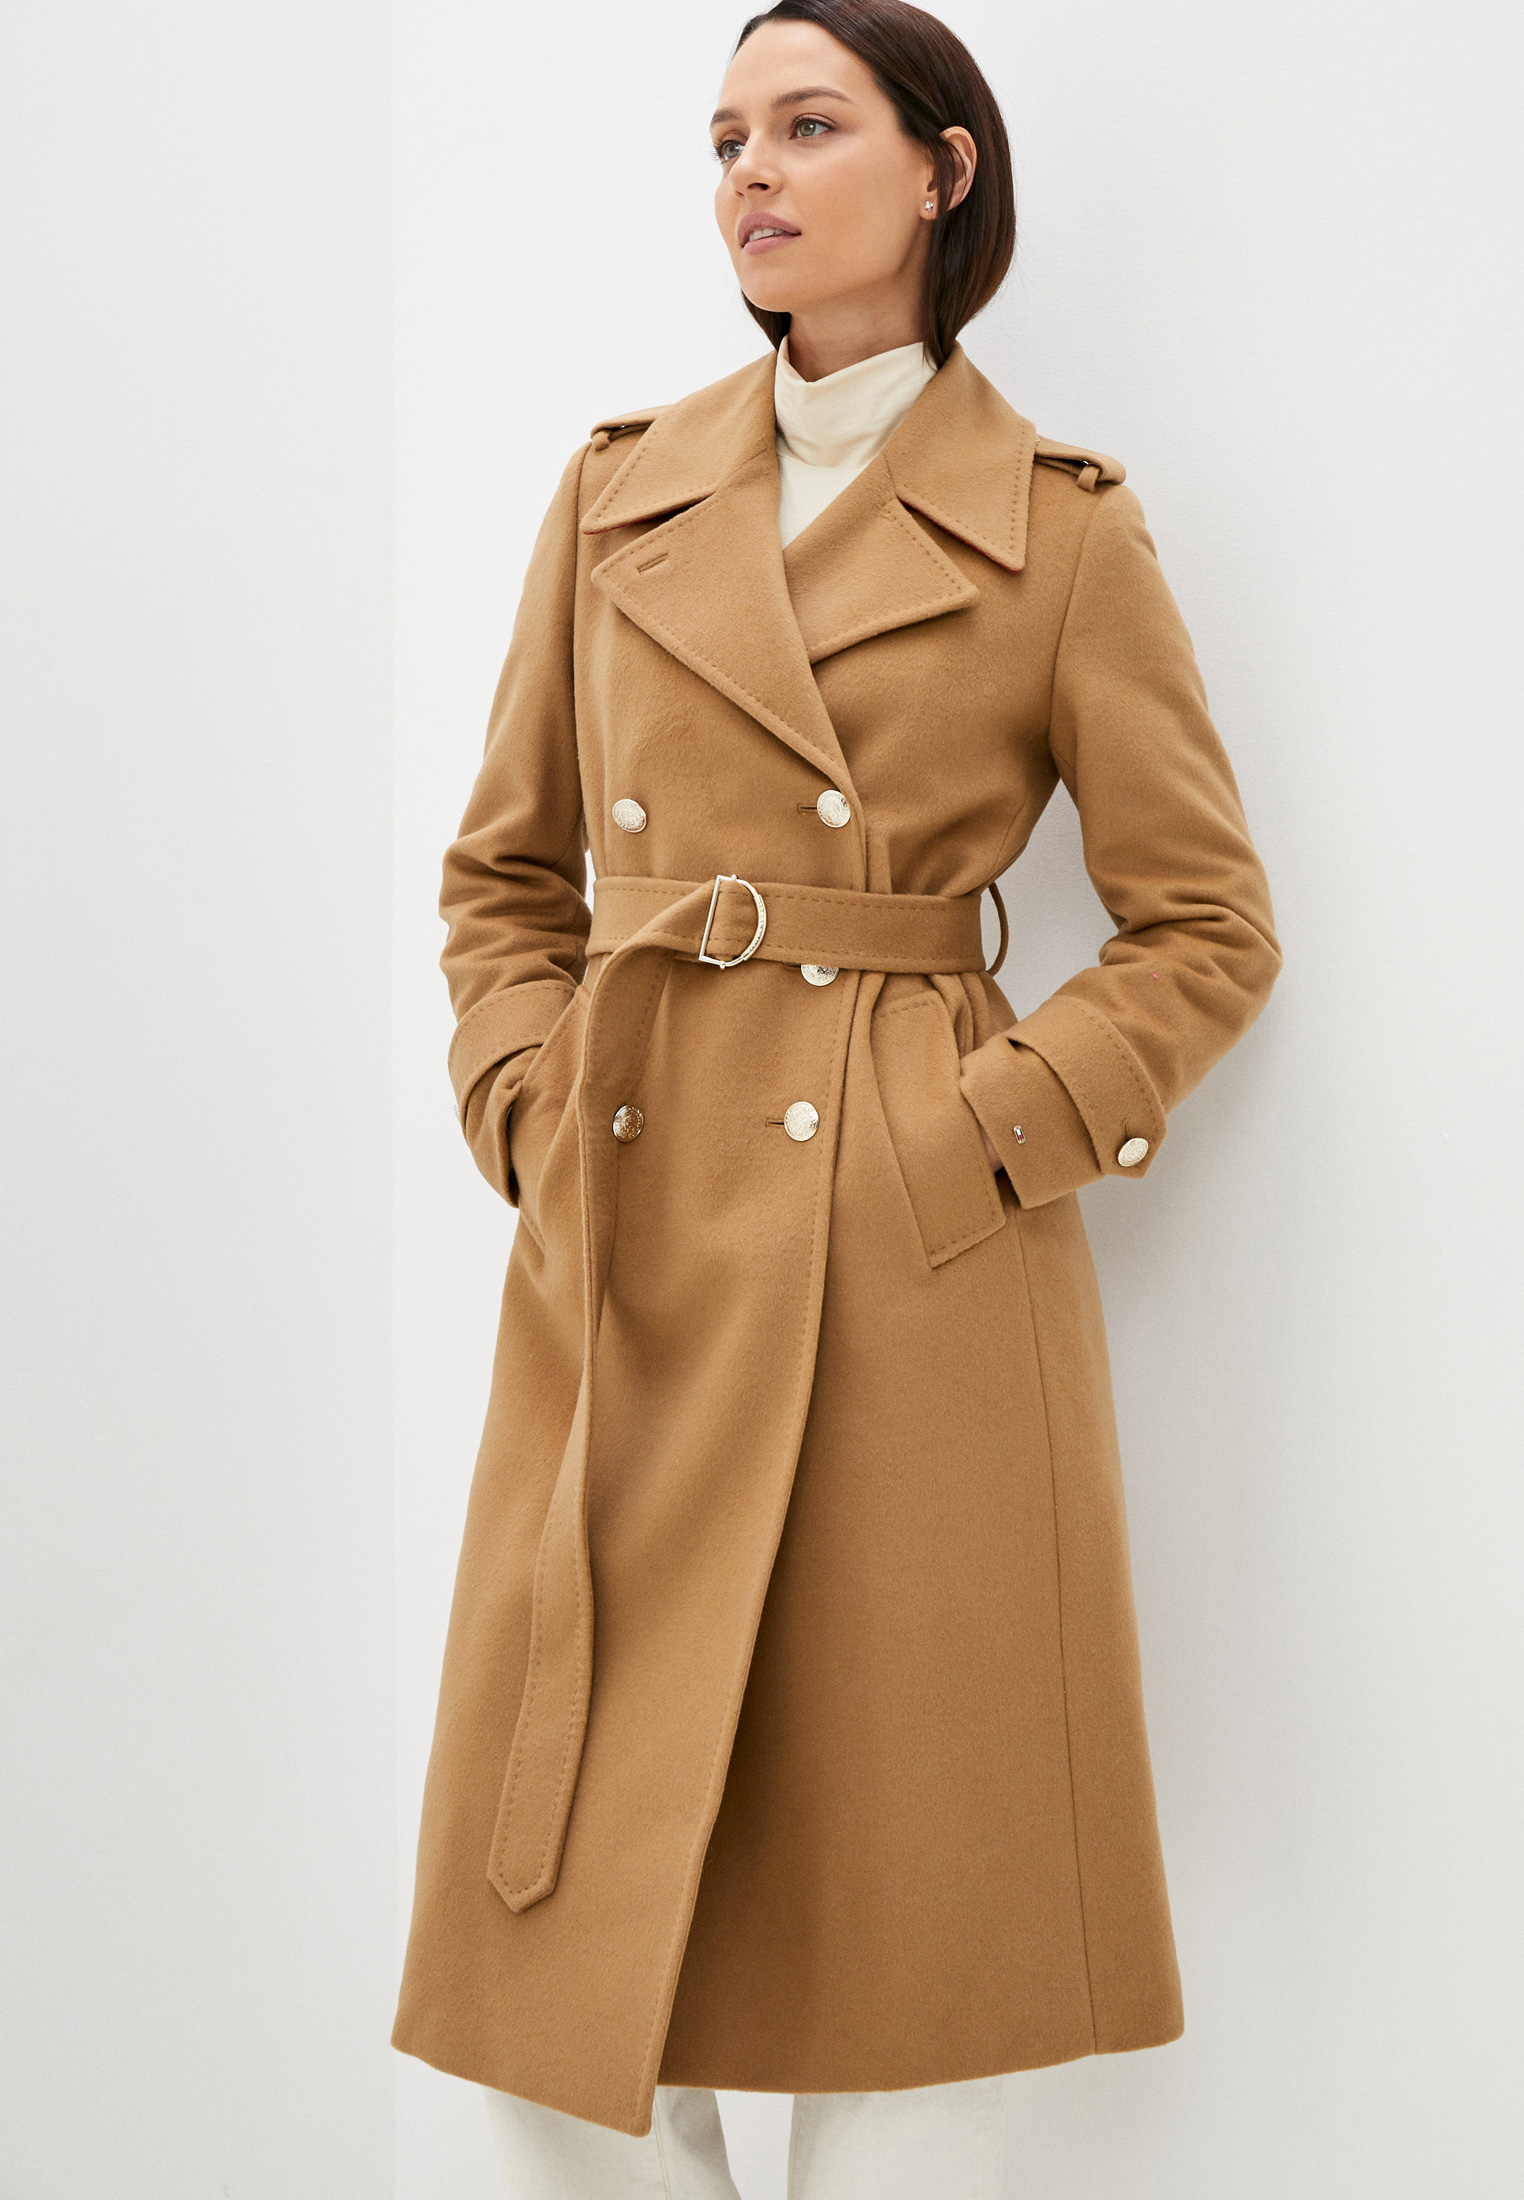 Женские пальто Tommy Hilfiger (Томми Хилфигер) WW0WW32756 купить за 35990  руб.